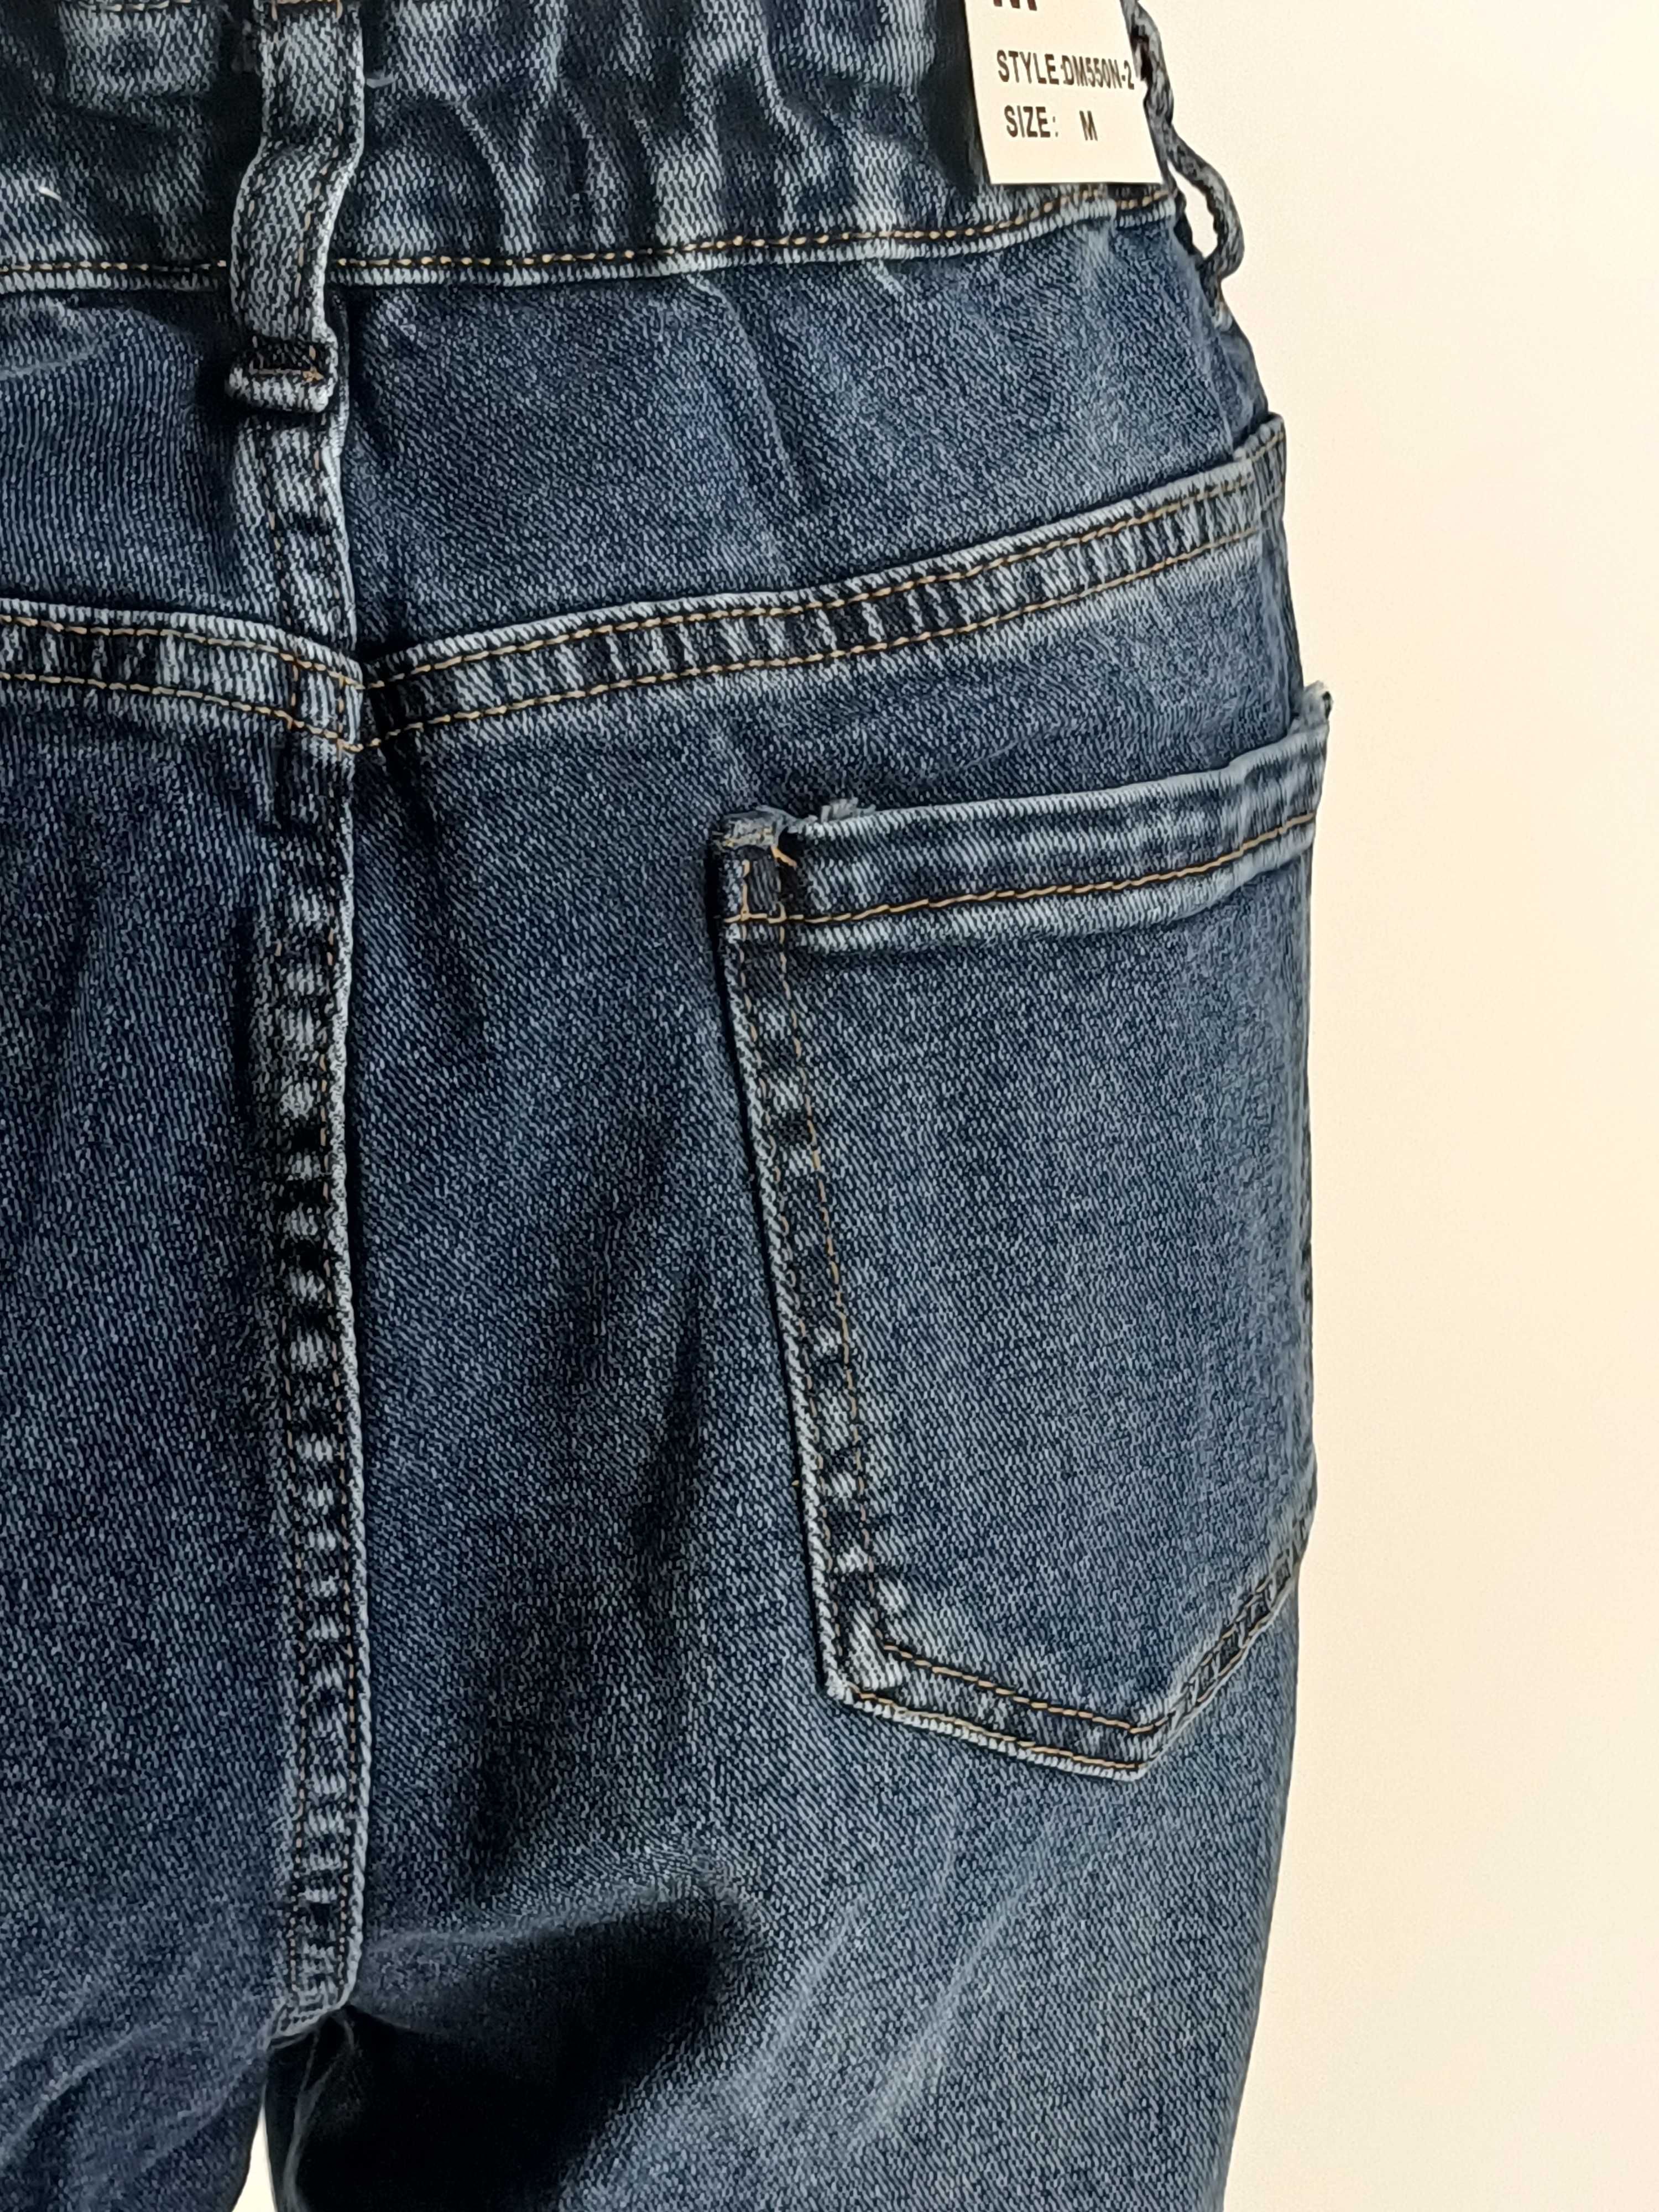 Spodnie Slouchy Jeans Blue damskie jeansy XS 34